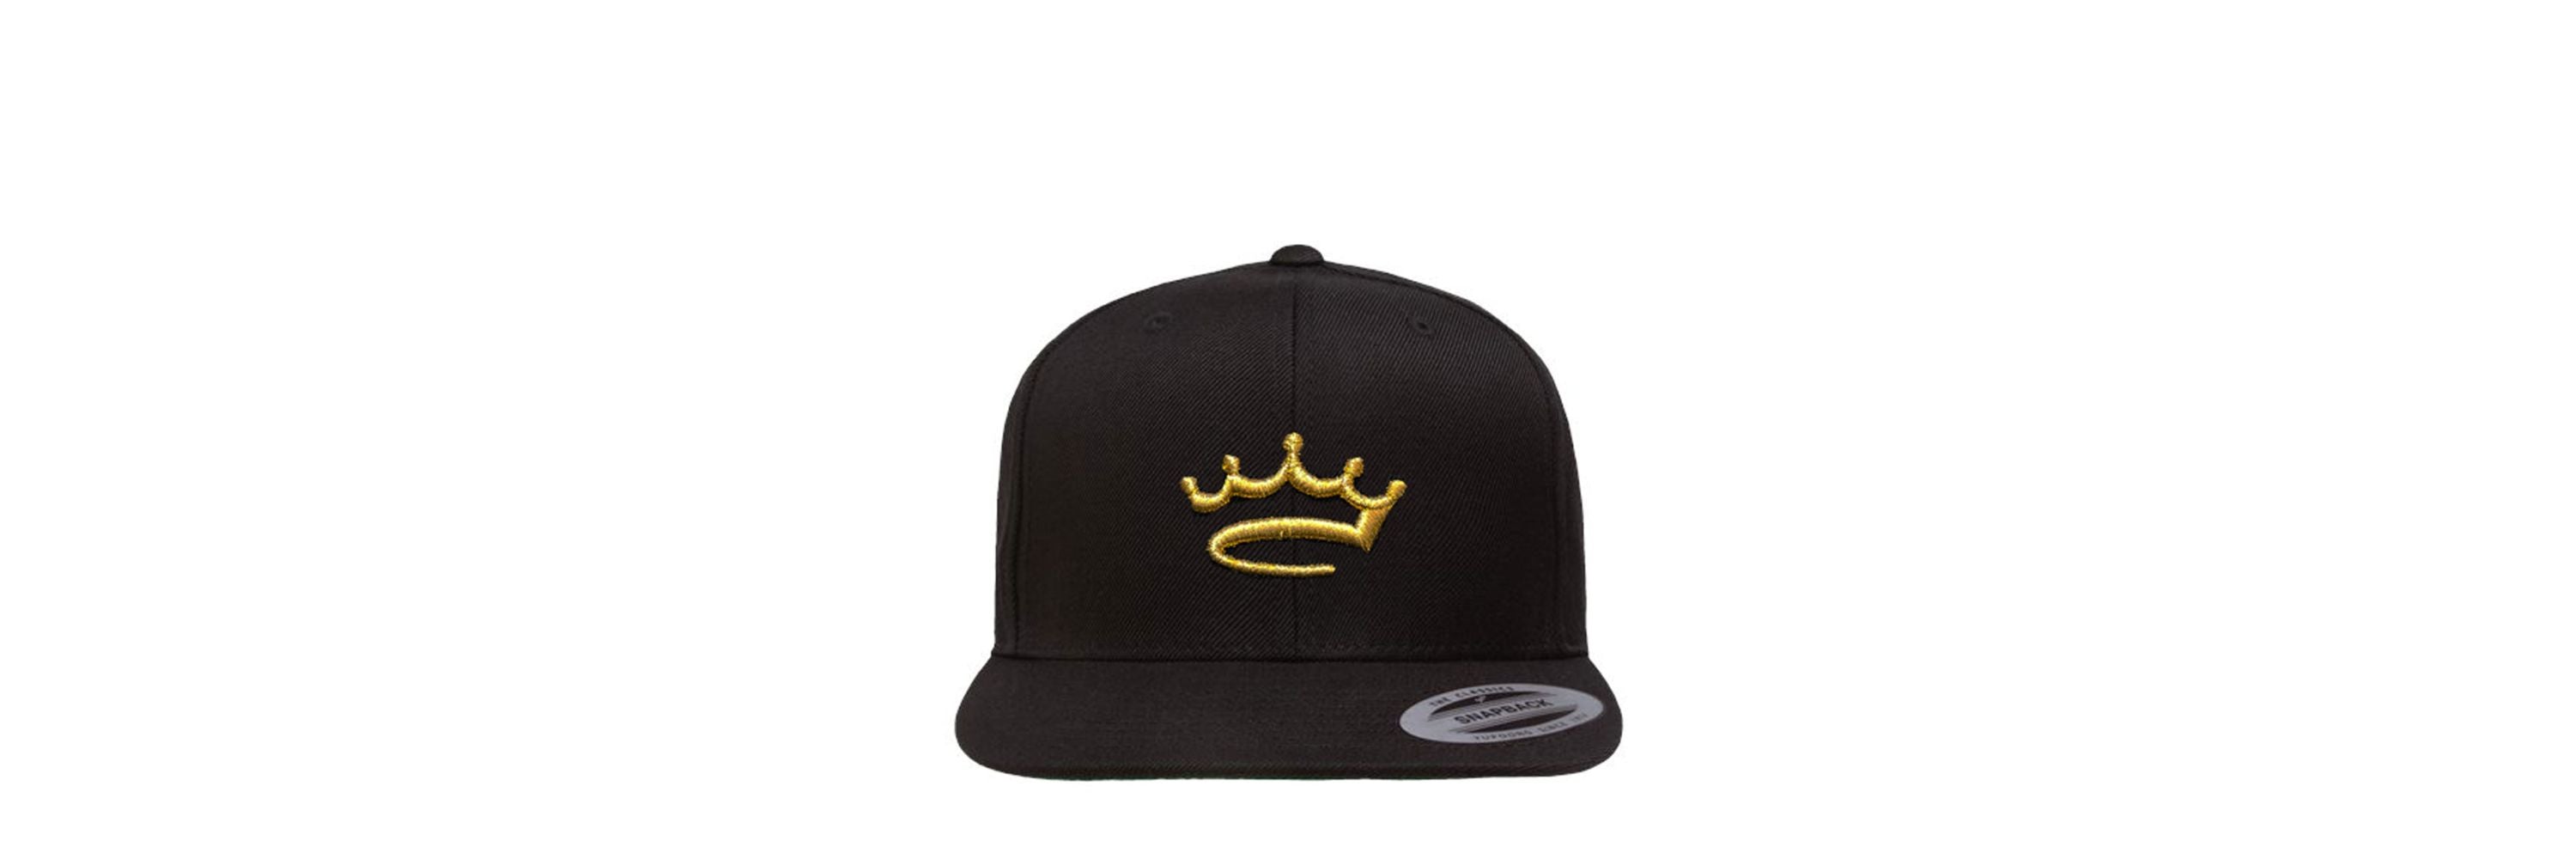 black gold crowned brand snapback hat